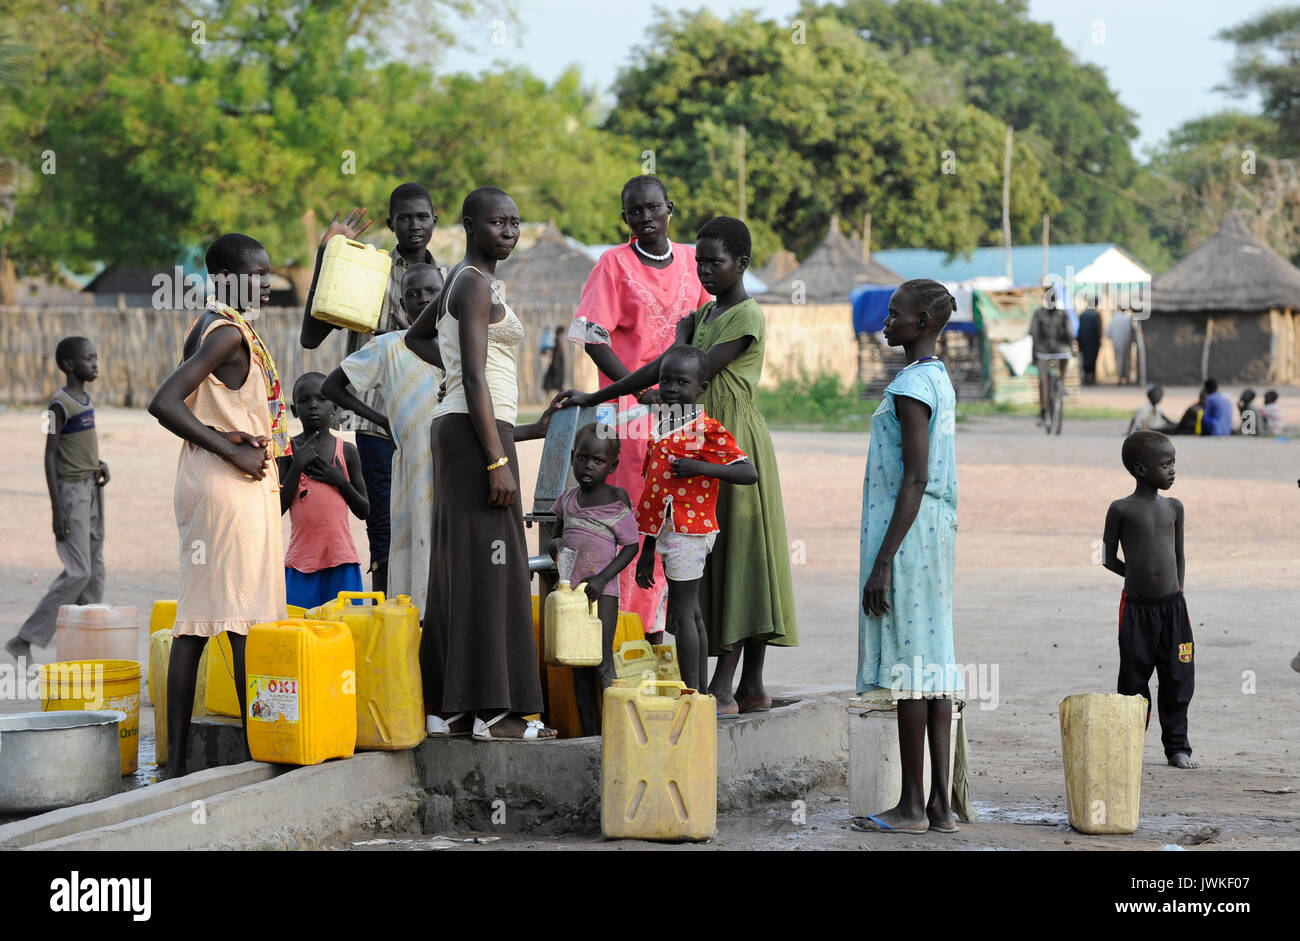 Süd-SUDAN, Rumbek, Wasserversorgung, die Frauen holen das Wasser aus der Pumpe set/SÜD-SUDAN, Rumbek, Wasserversorgung, Frauen holen Wasser von einem Brunnen Stockfoto